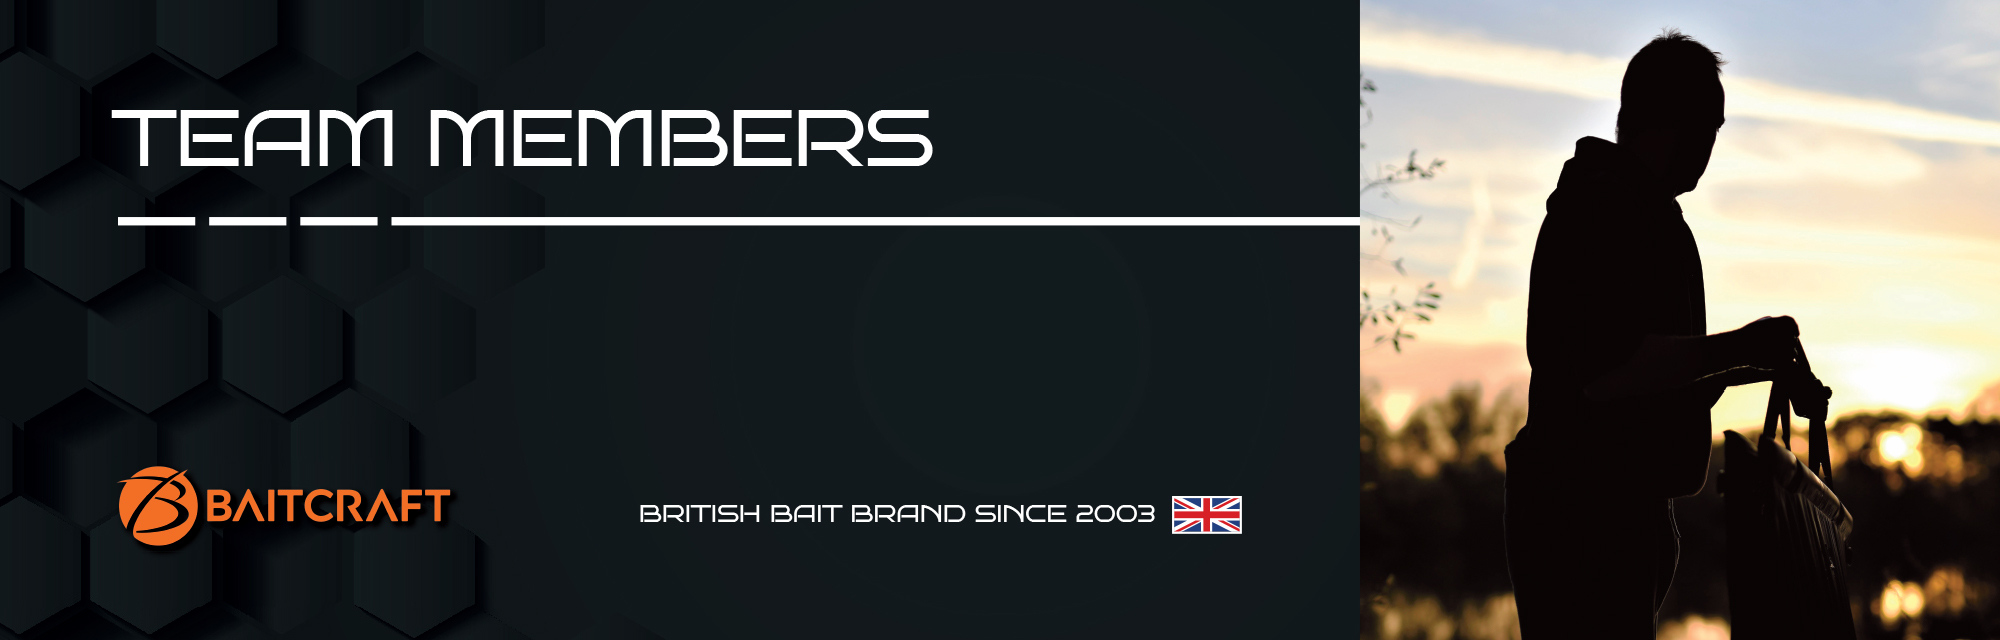 Baitcraft Ltd. | Our Team - our-team 